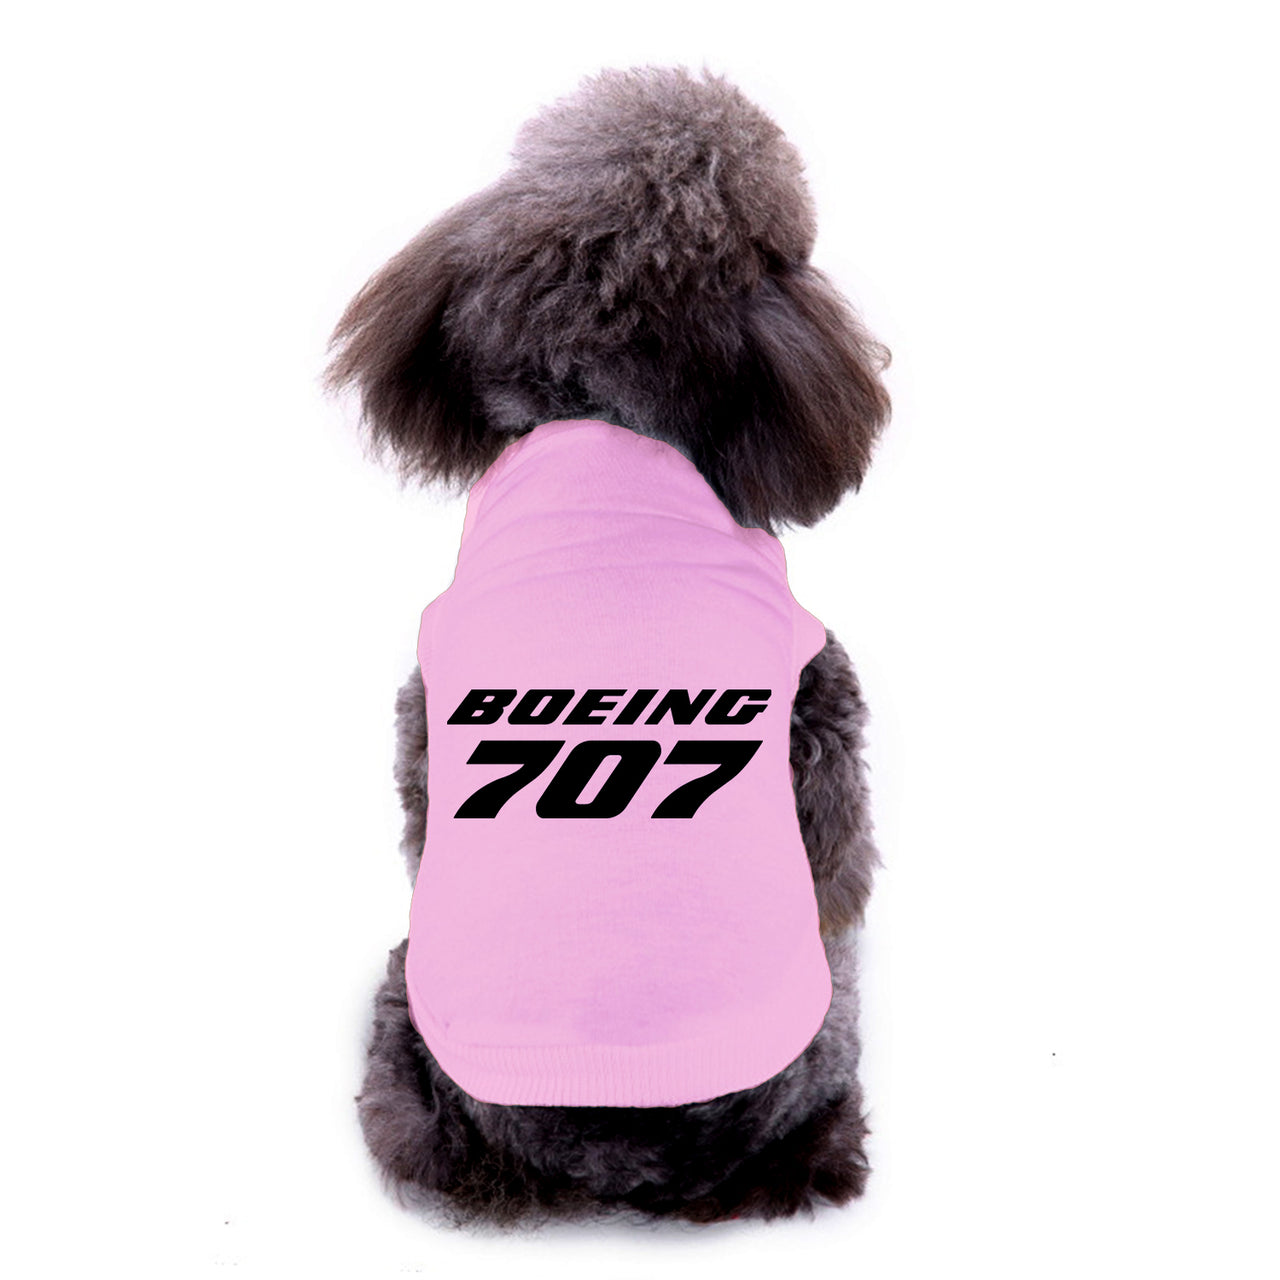 Boeing 707 & Text Designed Dog Pet Vests